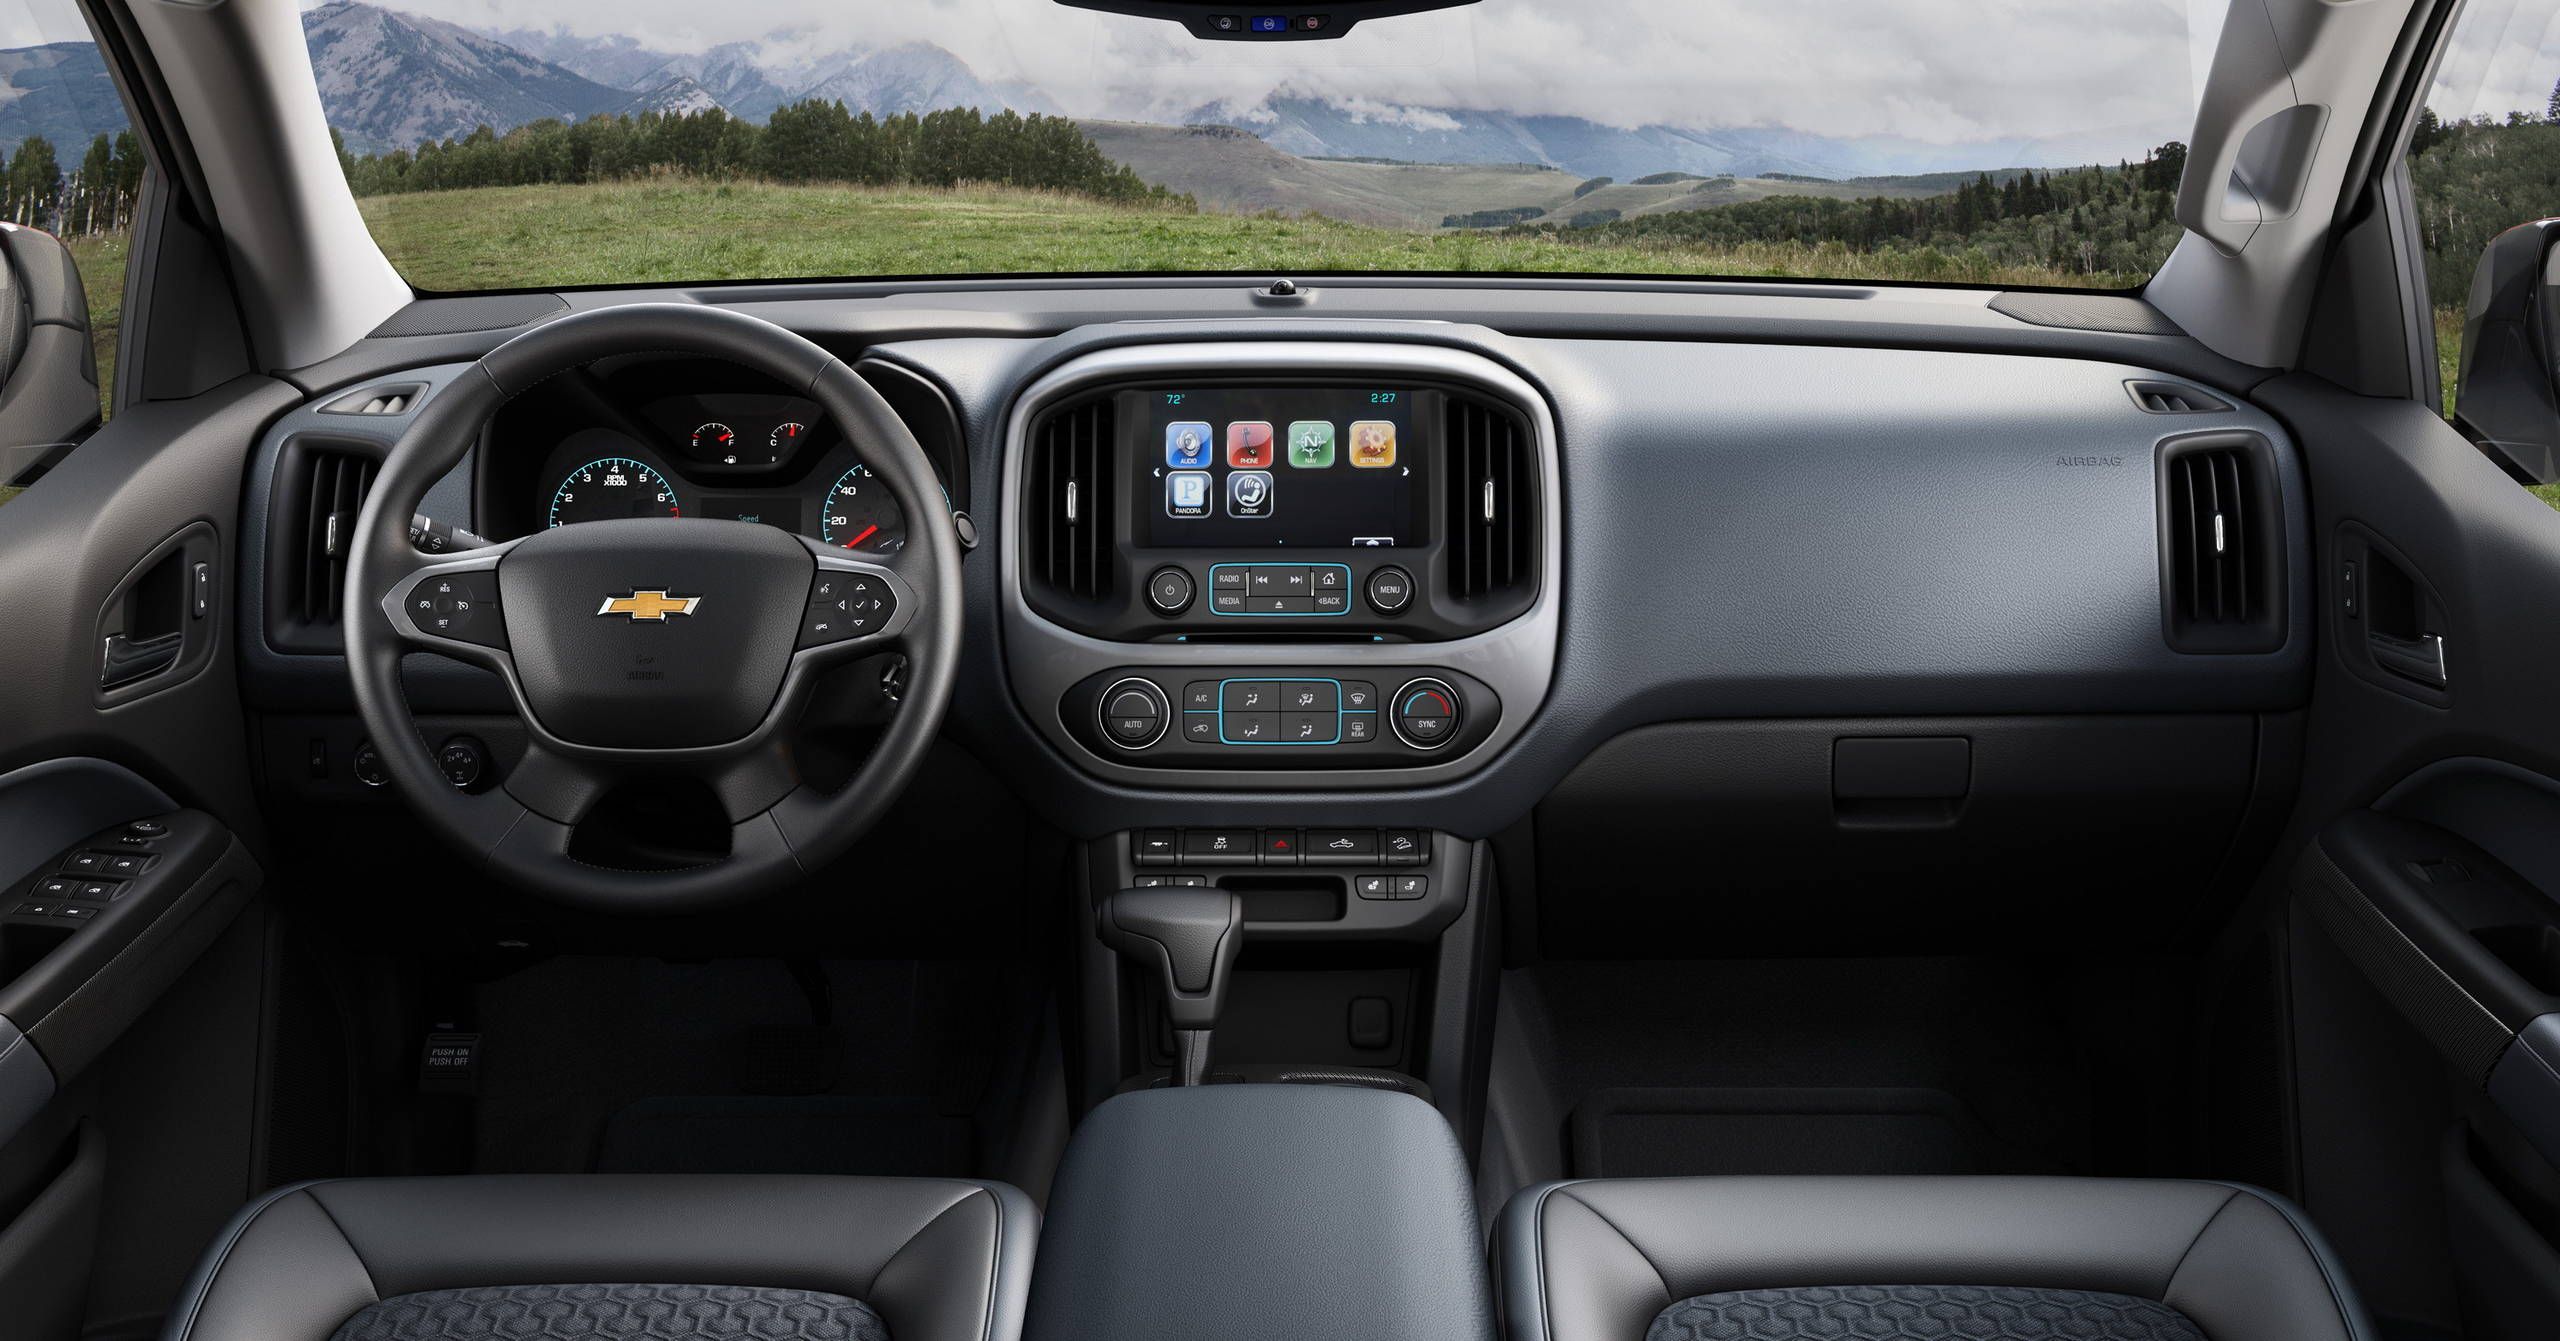 2018 Chevrolet Colorado essentials: Comfortable convenience